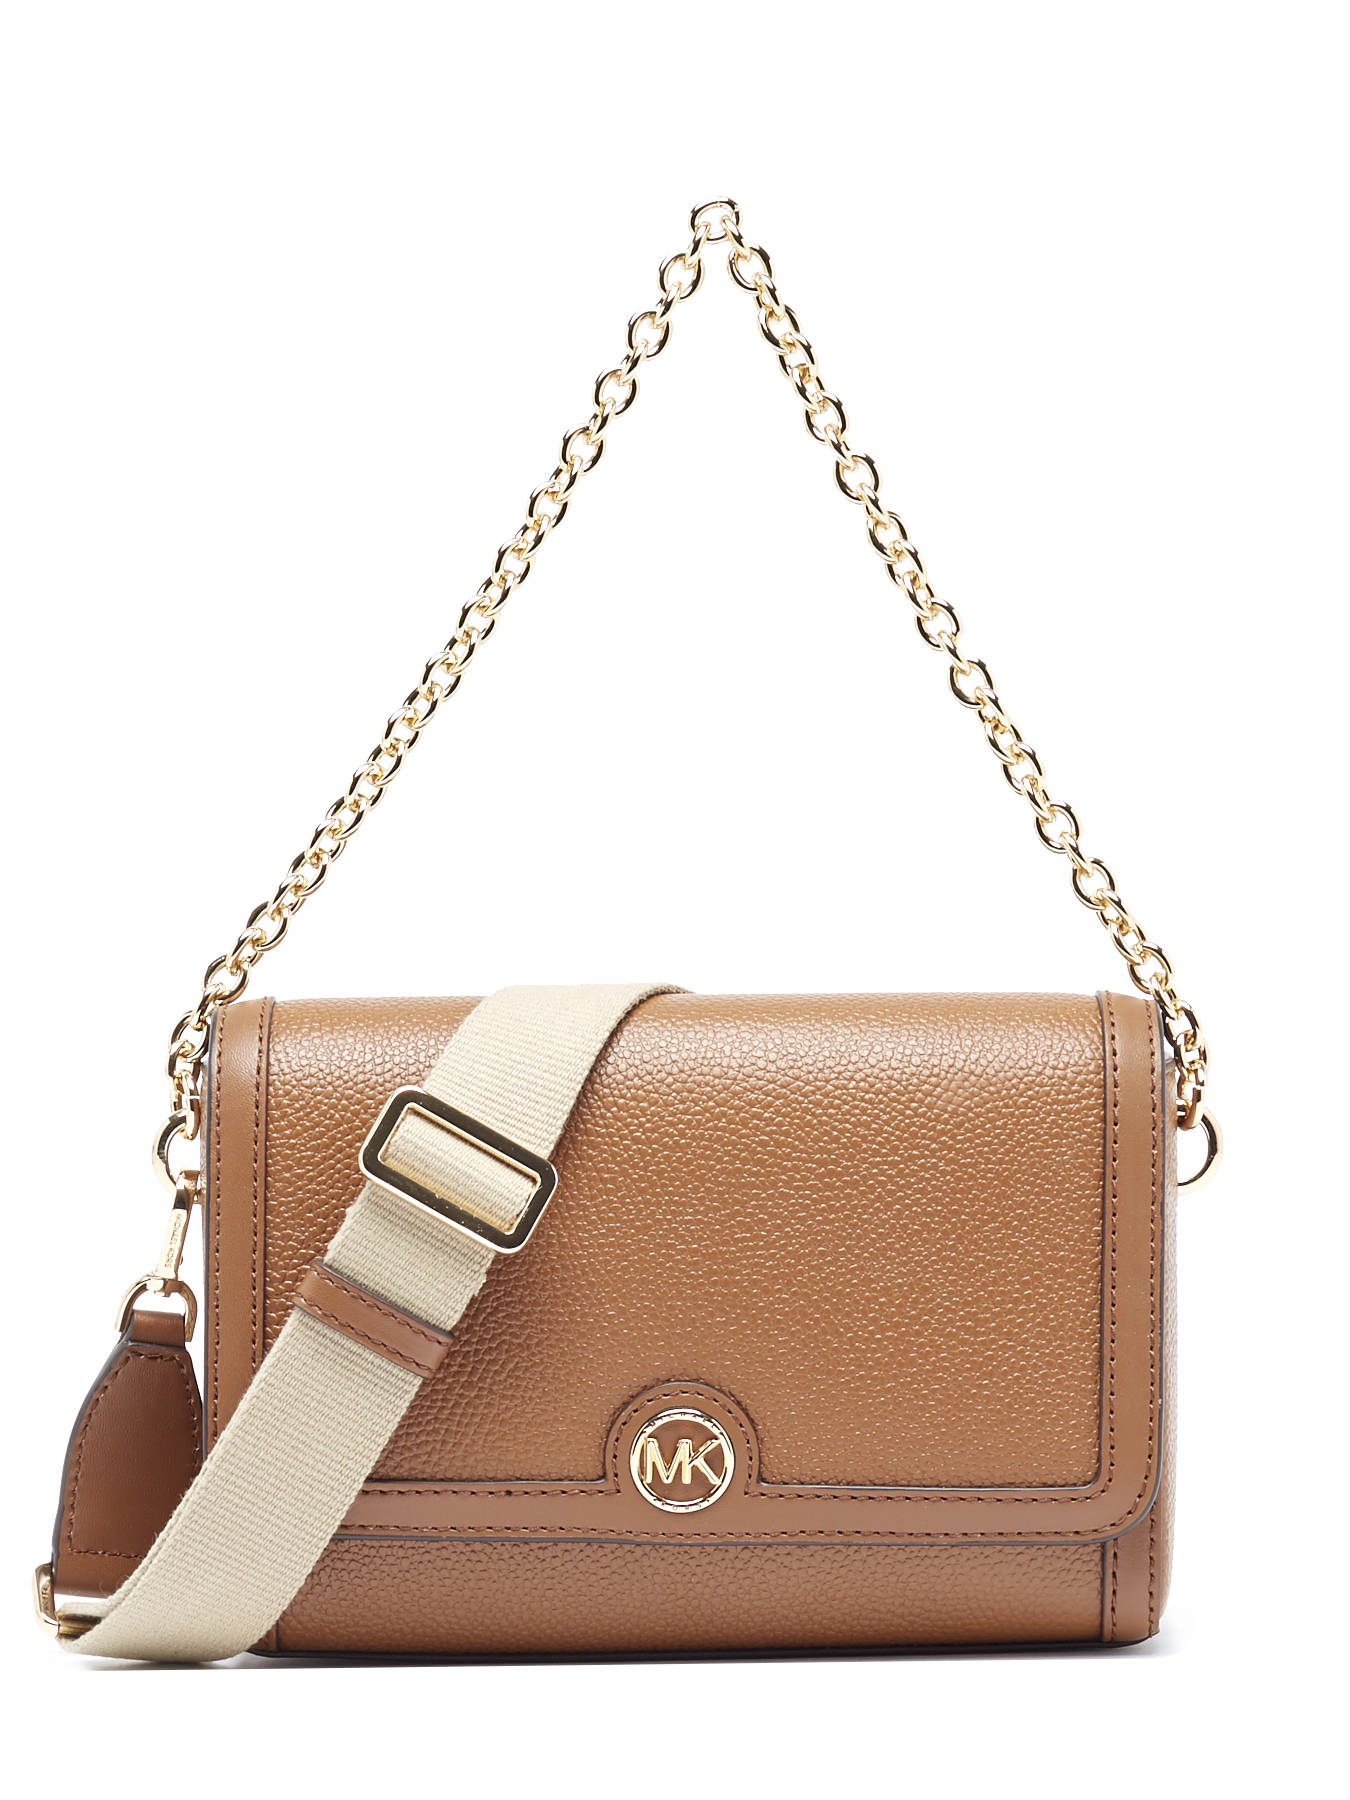 Michael Kors Freya SM Leather Handbag